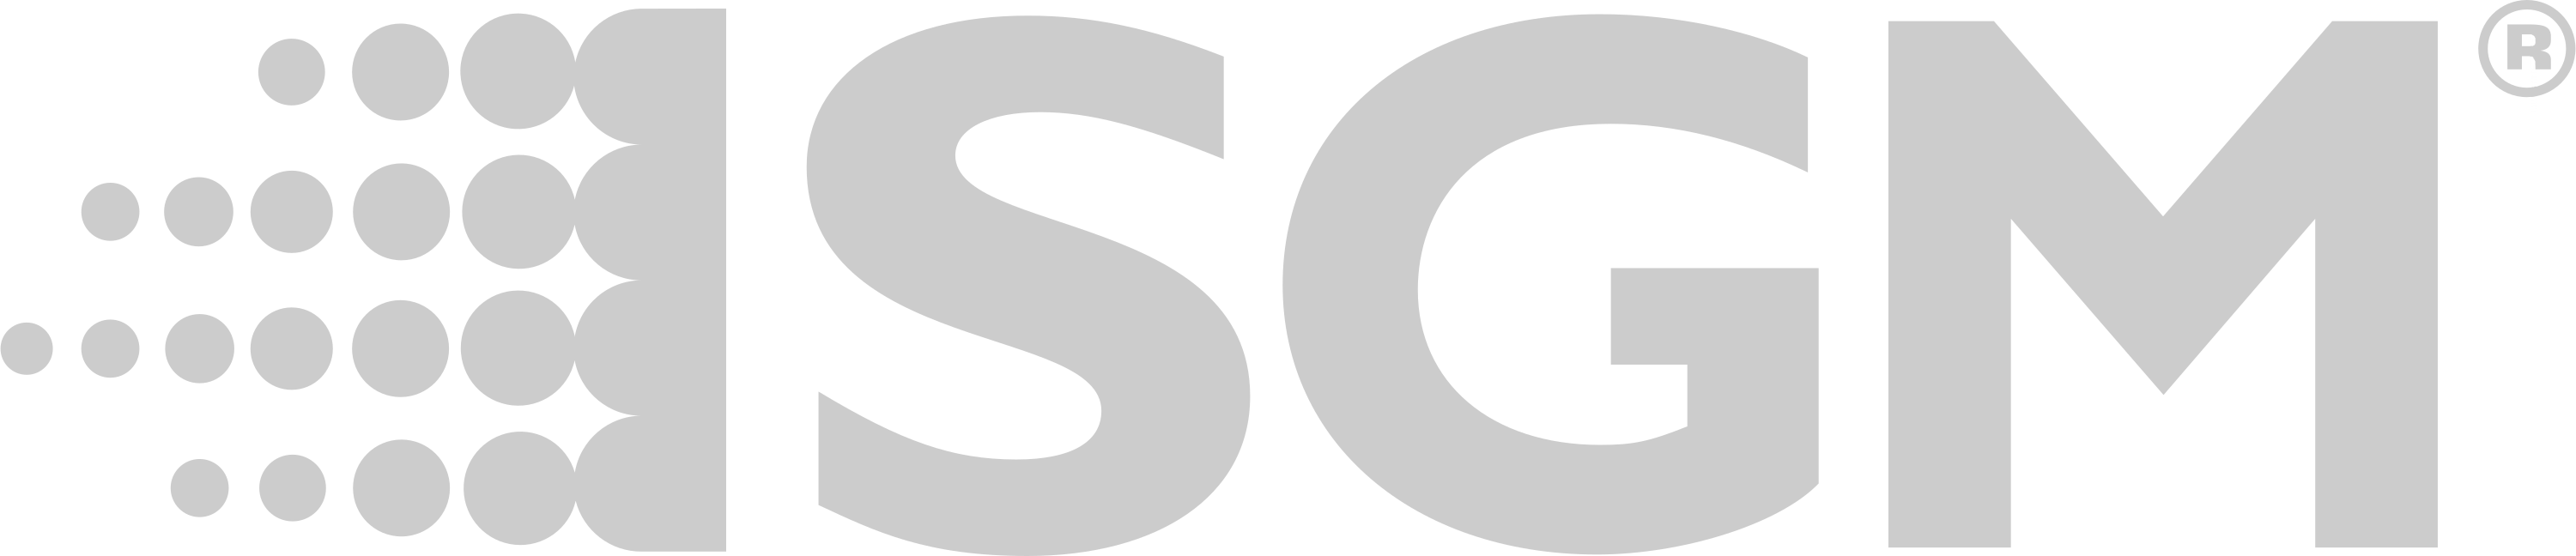 logo-sgm-2